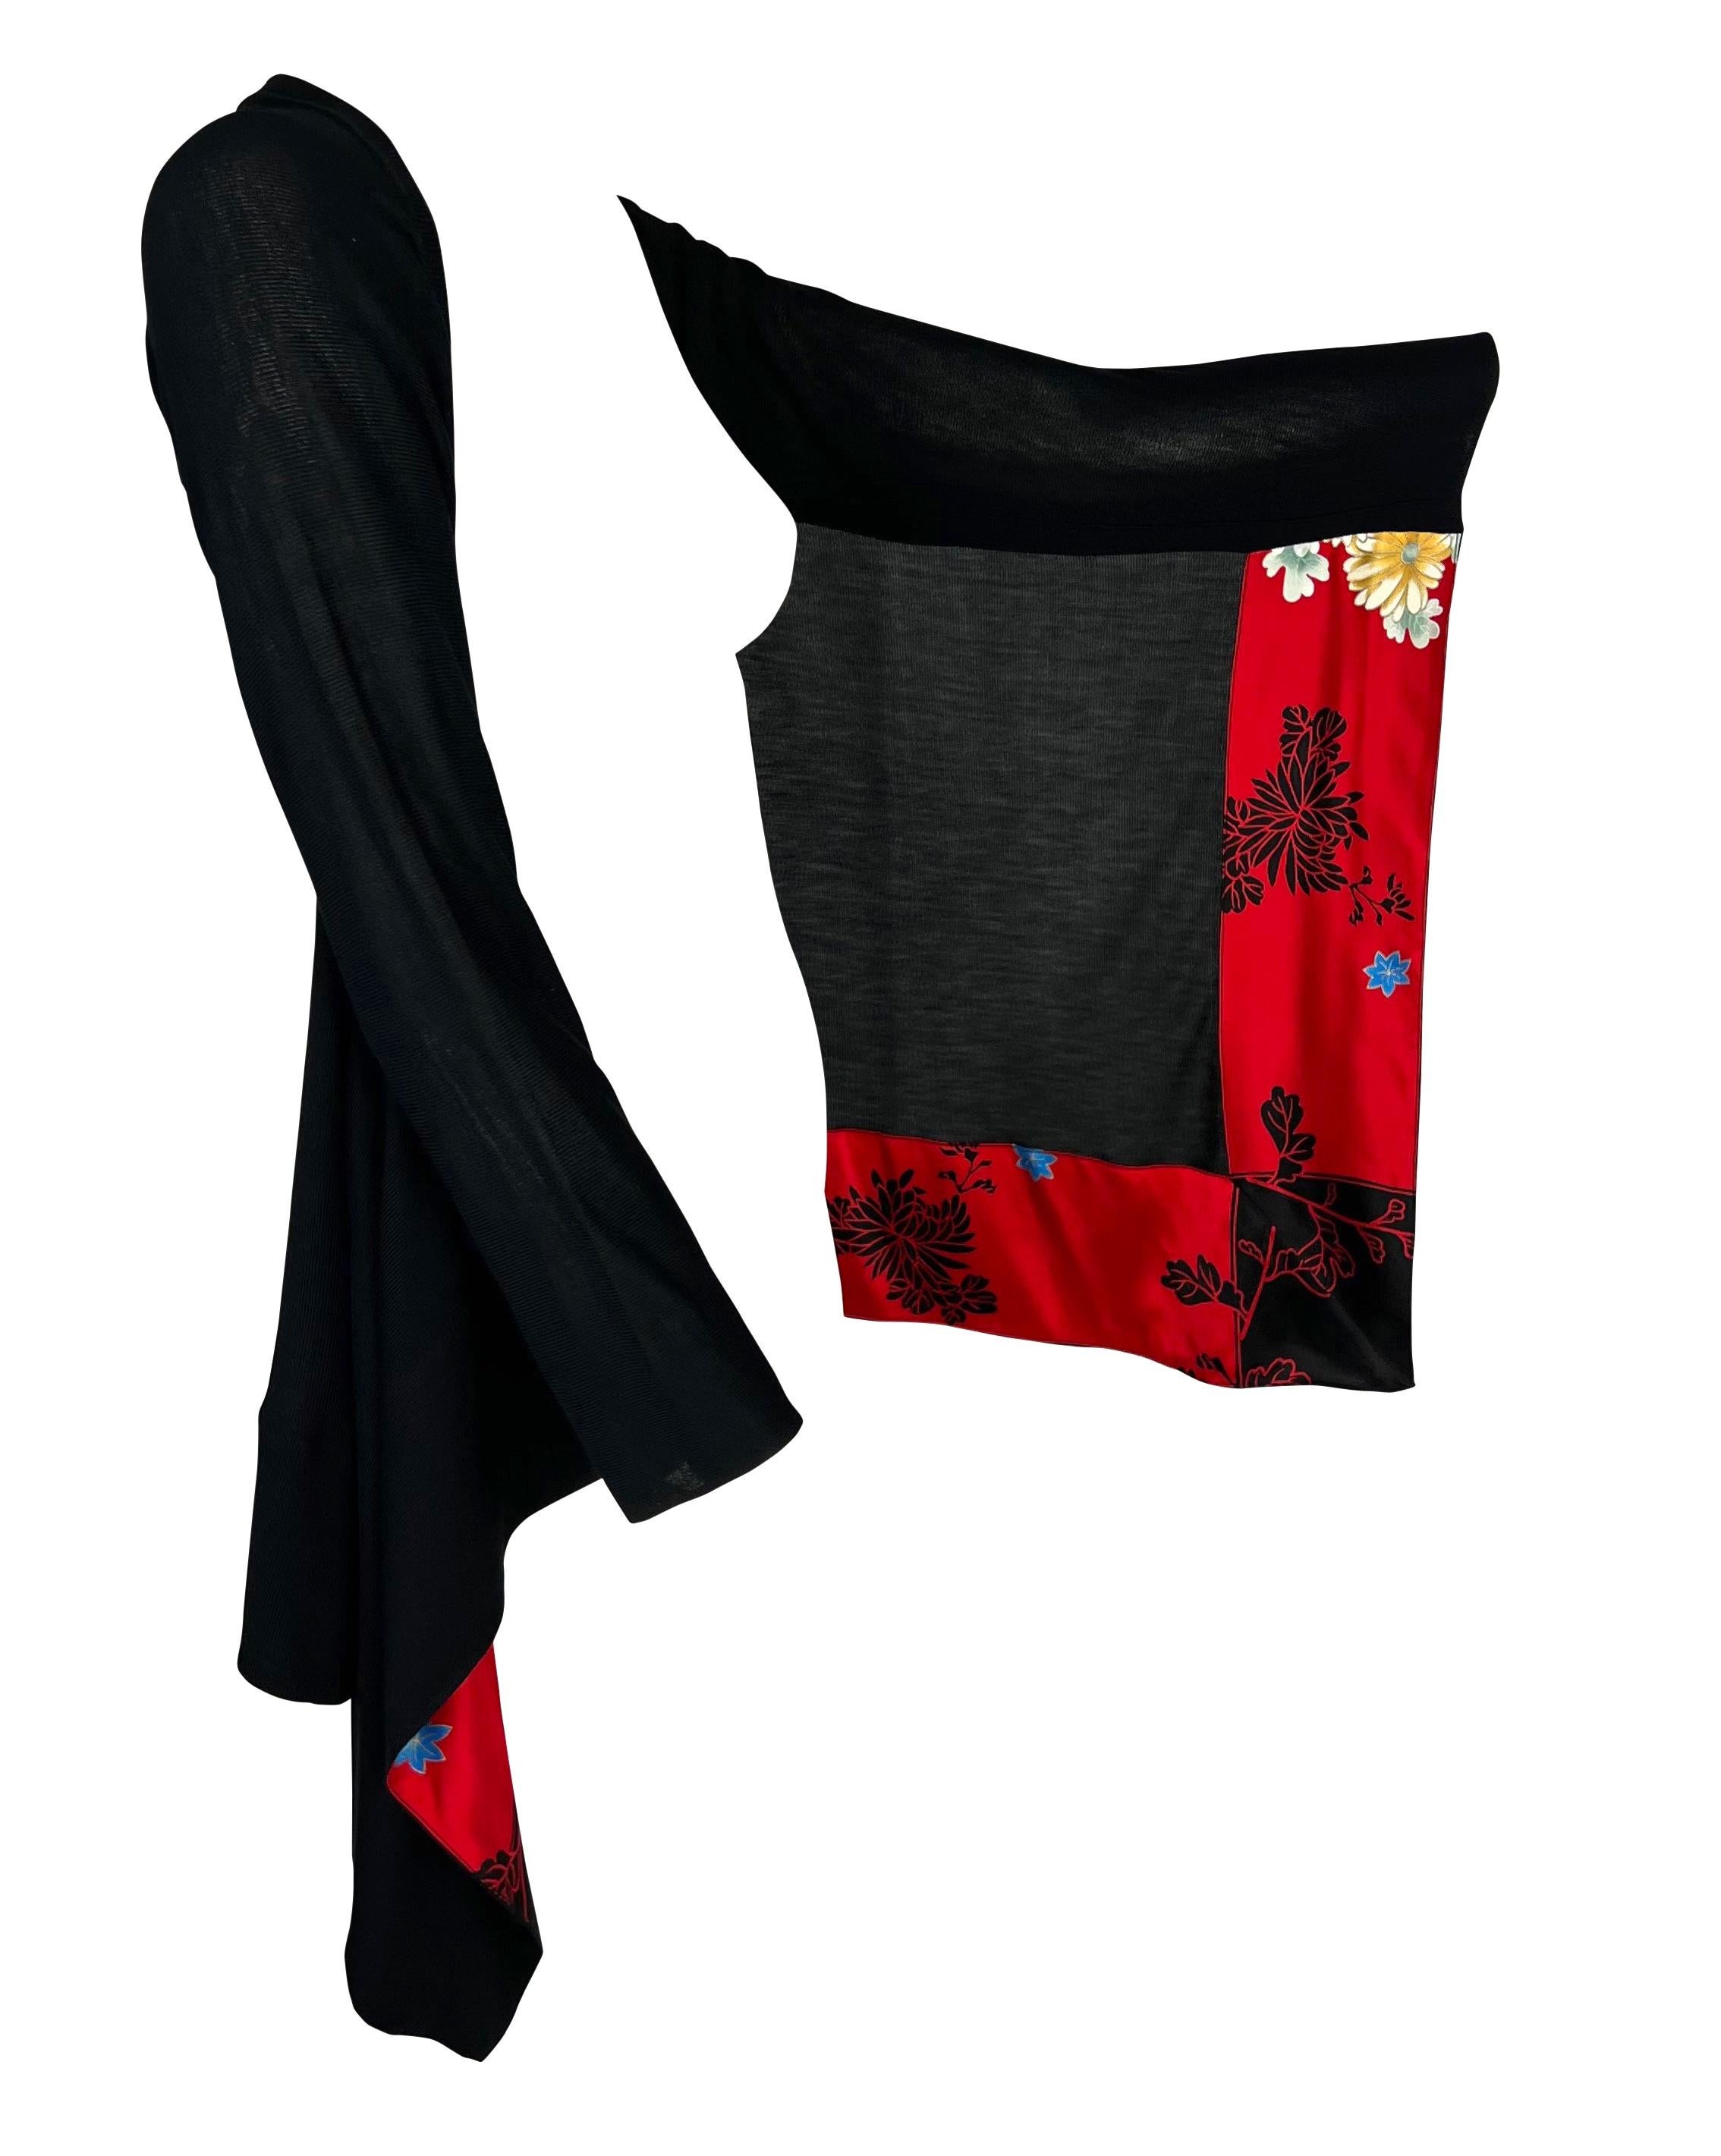 Wir präsentieren einen wunderschönen Roberto Cavalli Strickpullover im Kimono-Stil. Dieser fabelhafte Pullover aus dem Jahr 2008 besteht aus Stoff, der von den Armen herabhängt und an der Innenseite mit einem roten, geblümten Seidenbesatz versehen